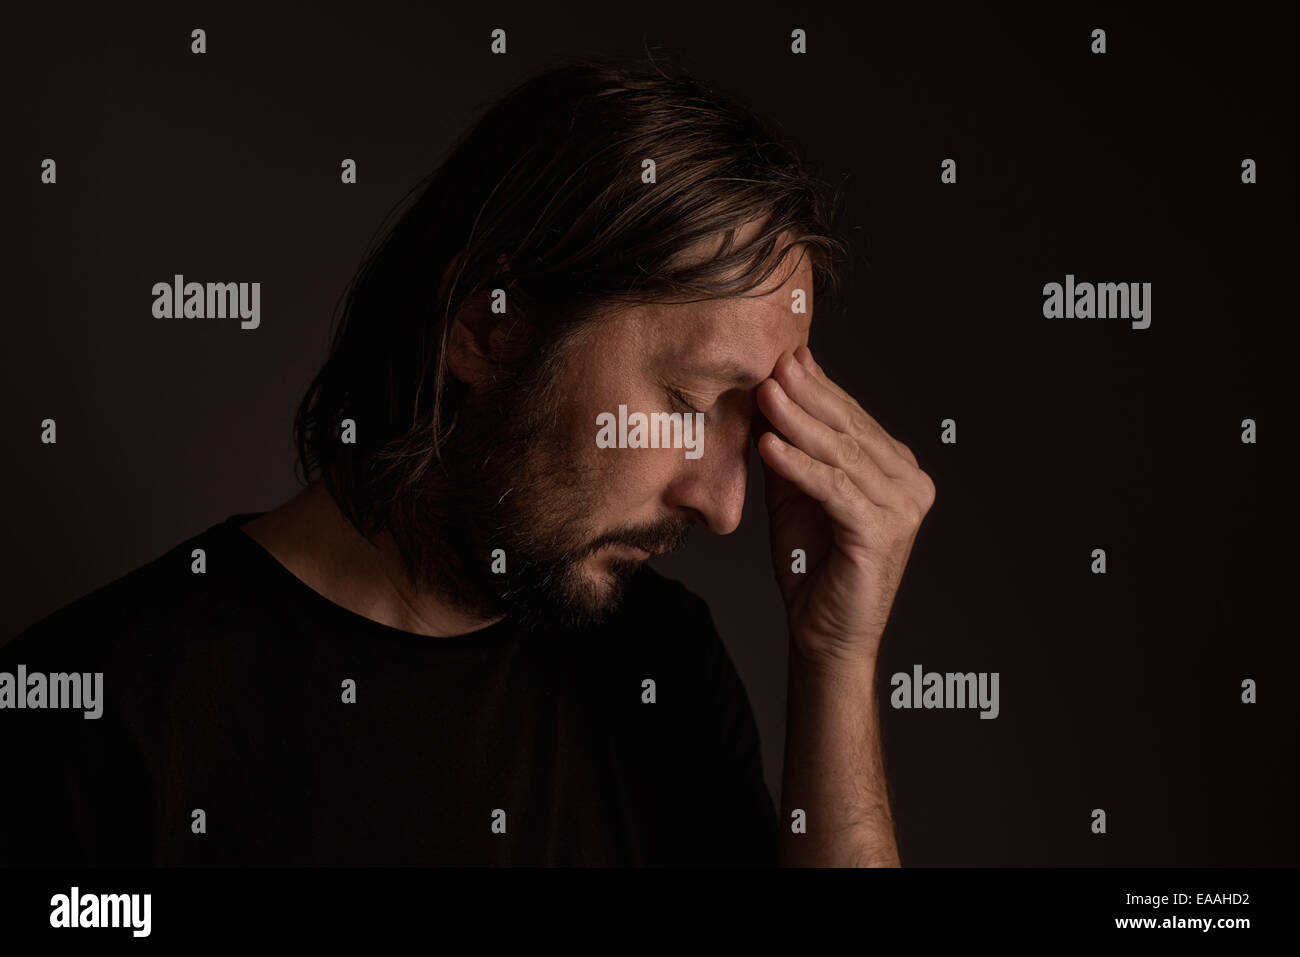 Bearded adult man with migraine headache, low key portrait Stock Photo